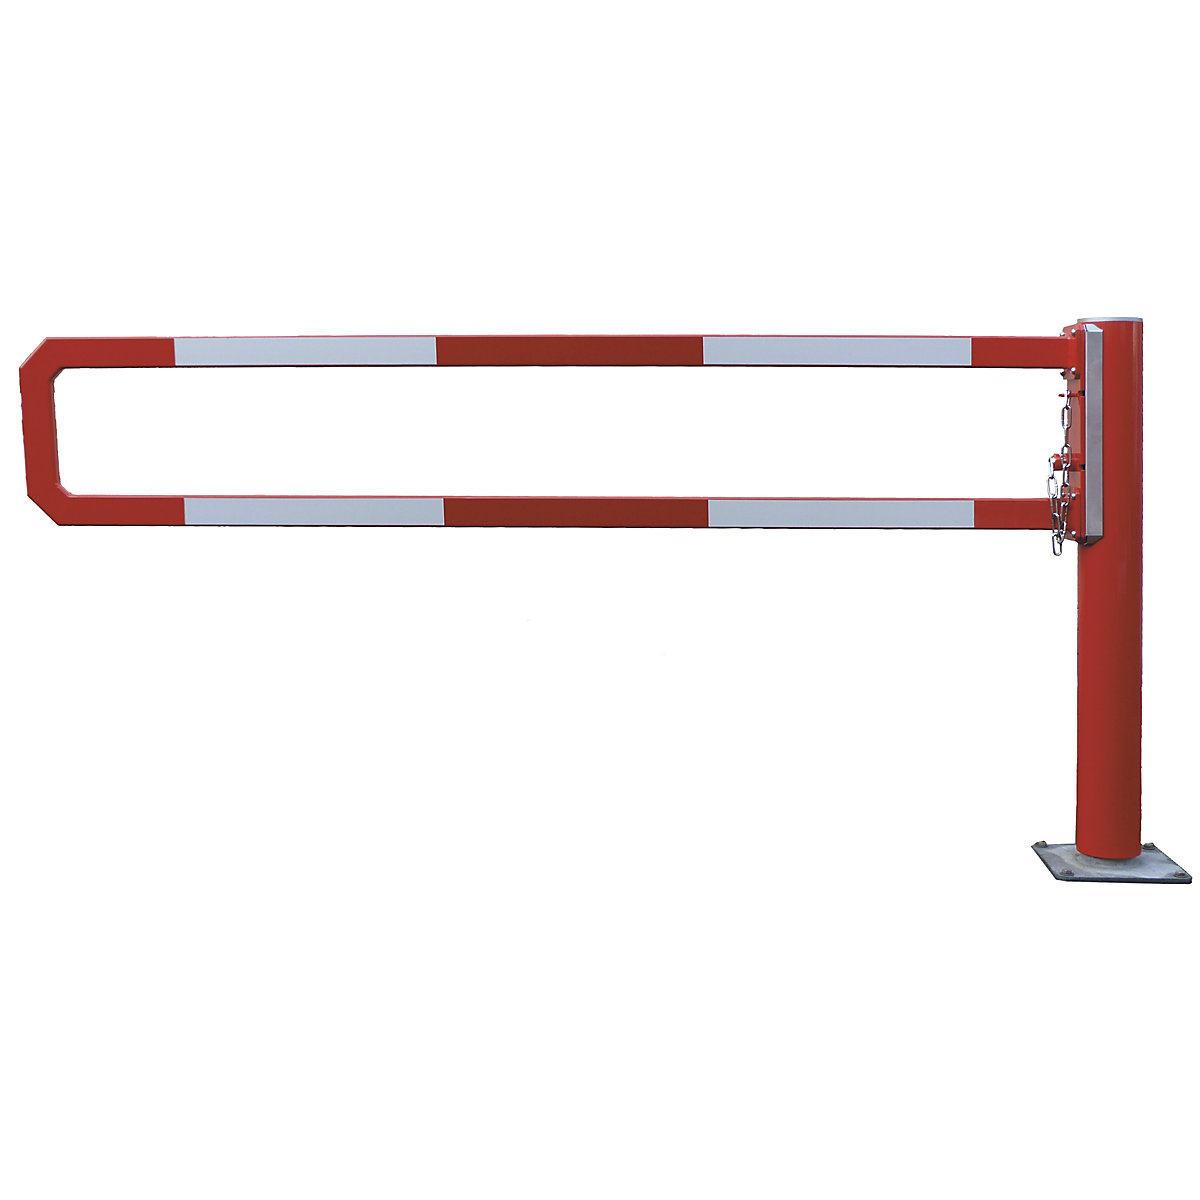 Okretna cestovna rampa – Mannus, svijetla širina 1 m, vruće pocinčano, dodatno praškasto lakirano u crvenoj boji-2